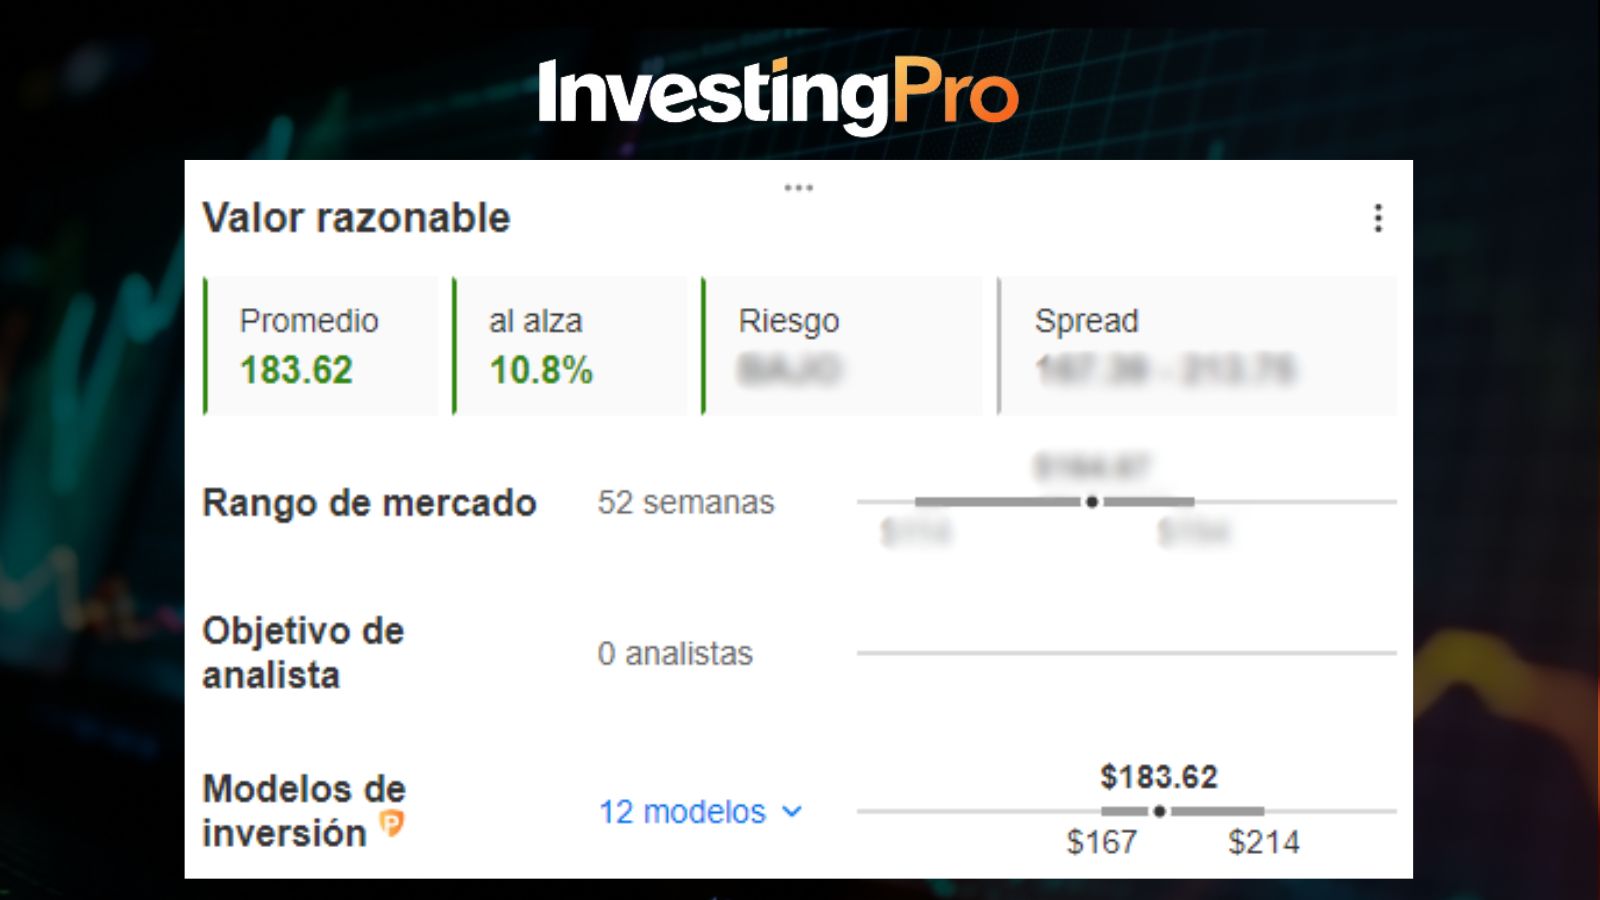 Valor Razonable de Amazon / InvestingPro